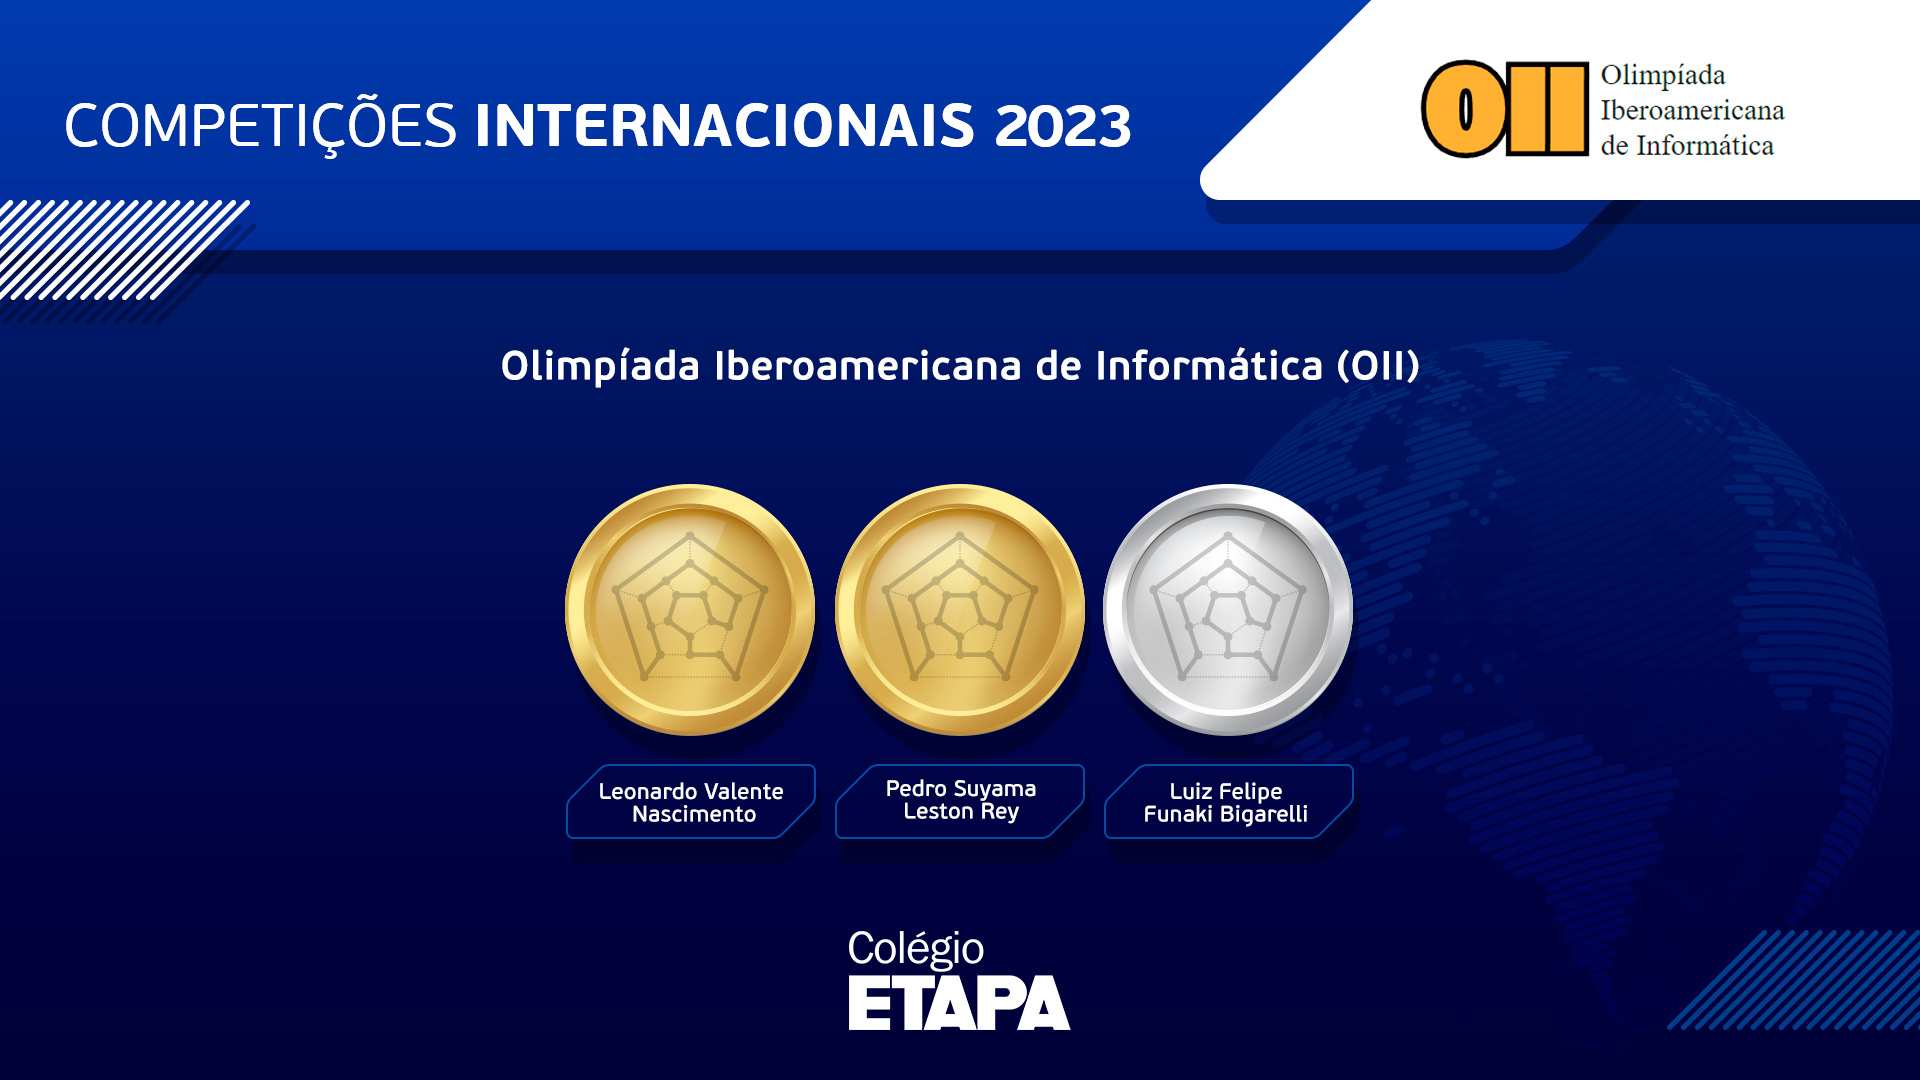 Três alunos do Colégio Etapa conquistaram medalhas na OII 2023.